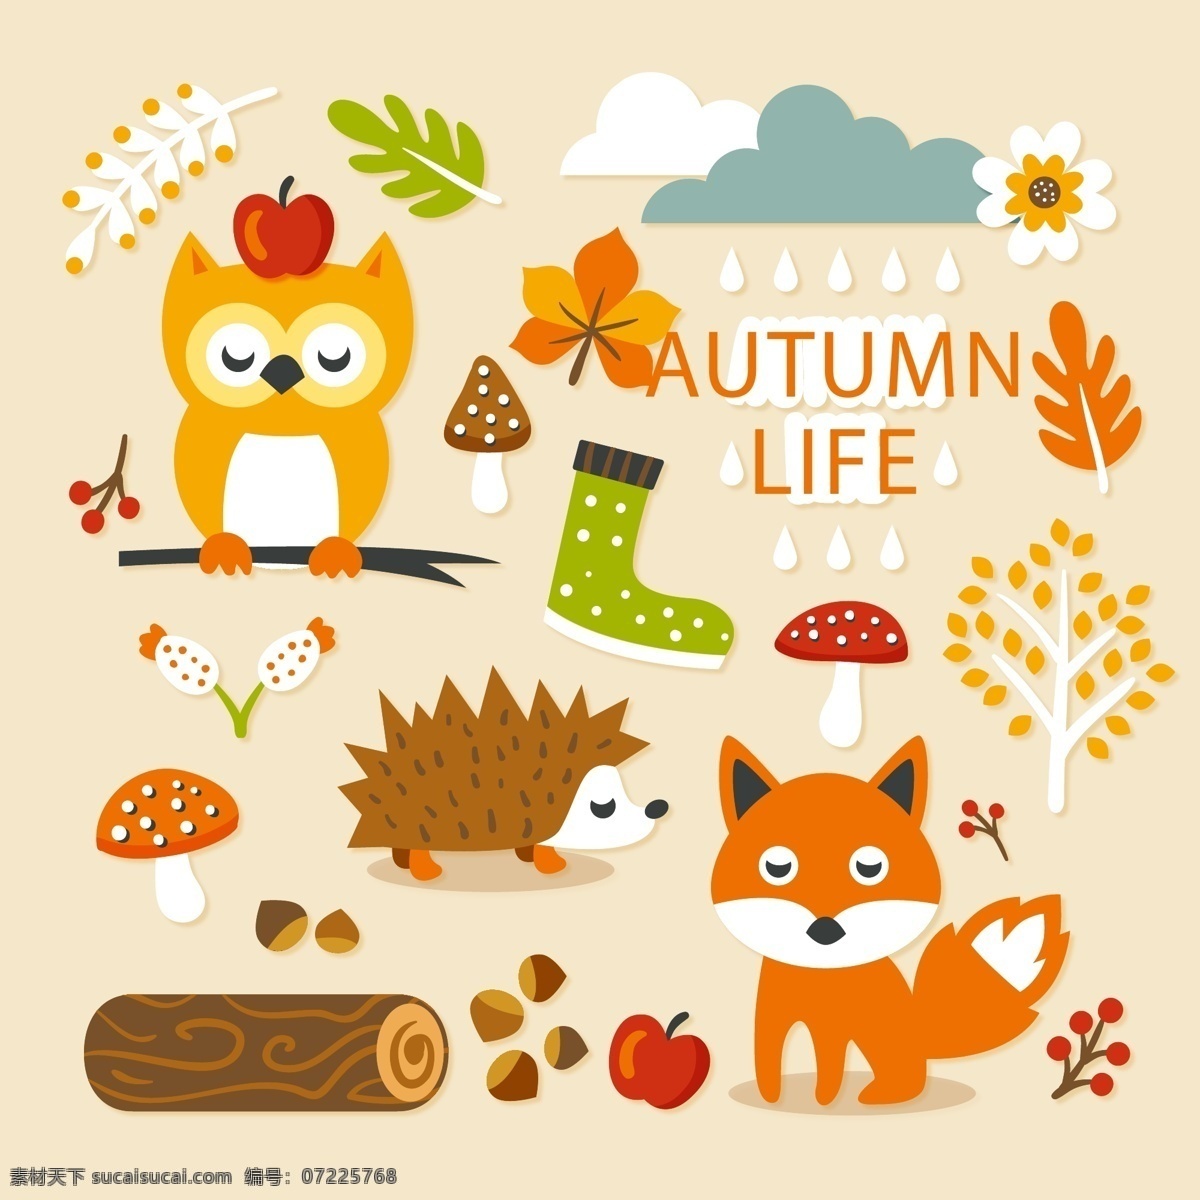 可爱的小动物 可爱 卡通 叶子 刺猬 狐狸